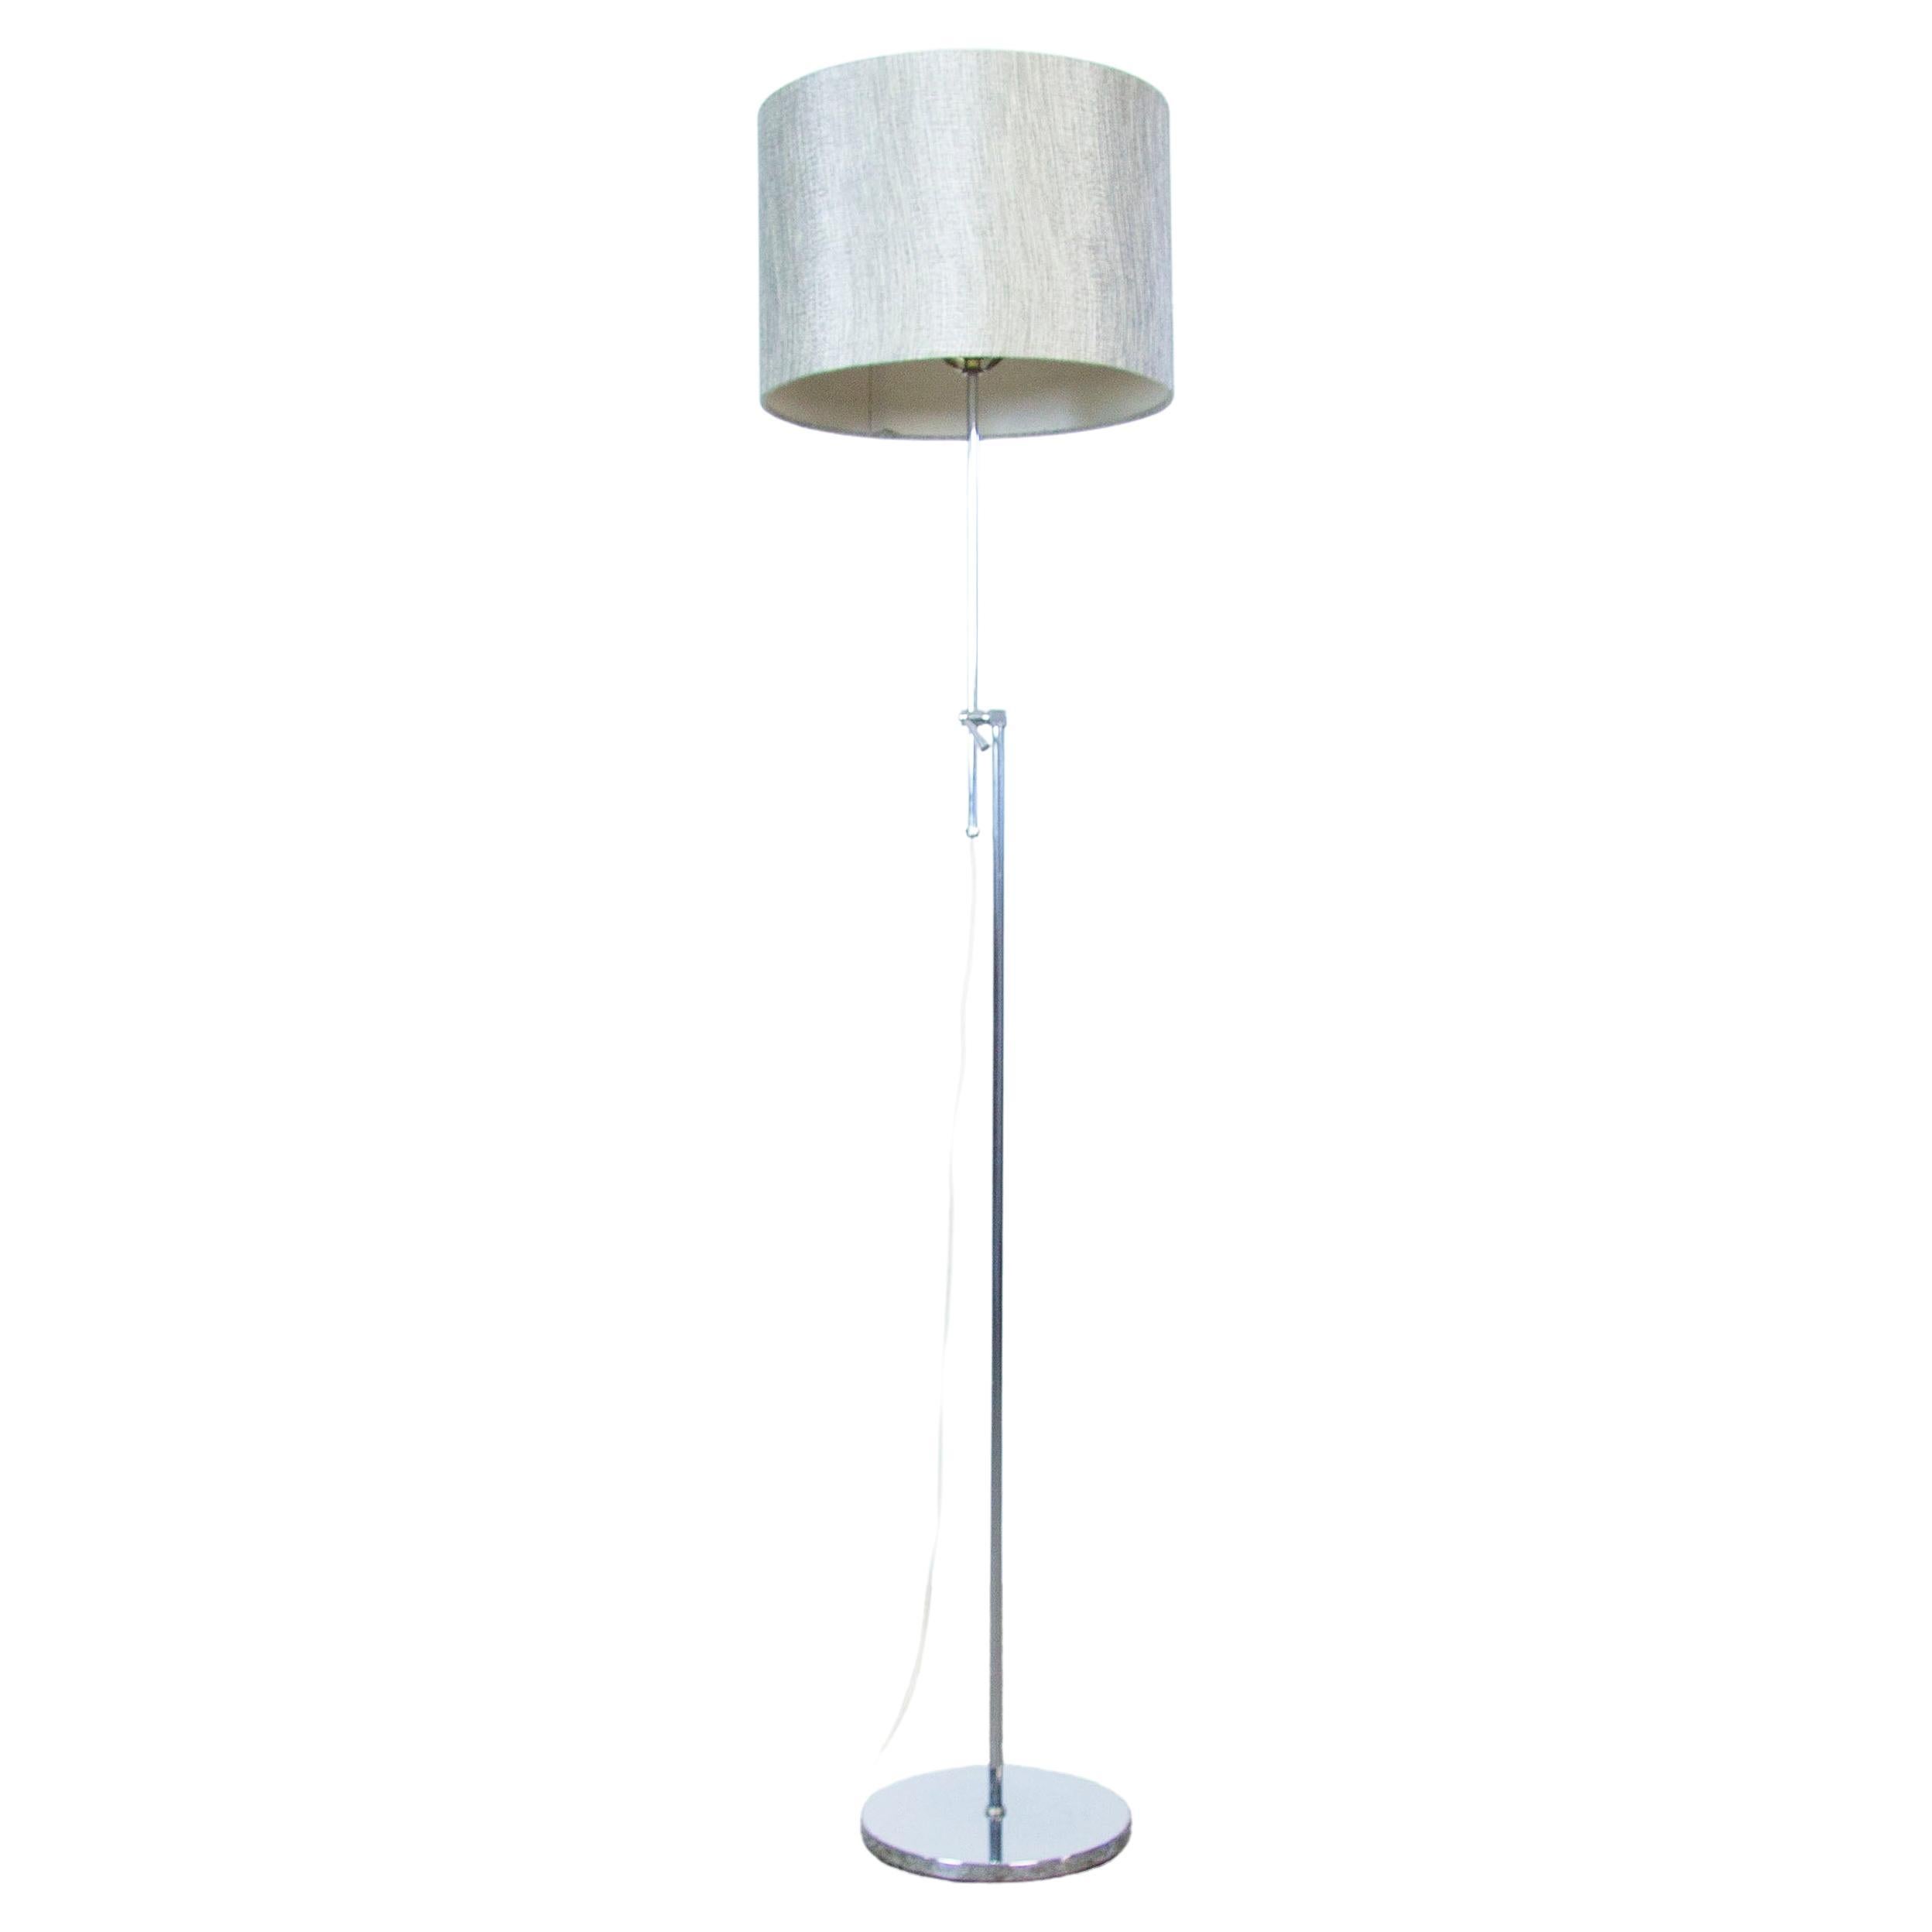 Vintage Chrome Adjustable Height Floor Lamp, Mid-Century Modern